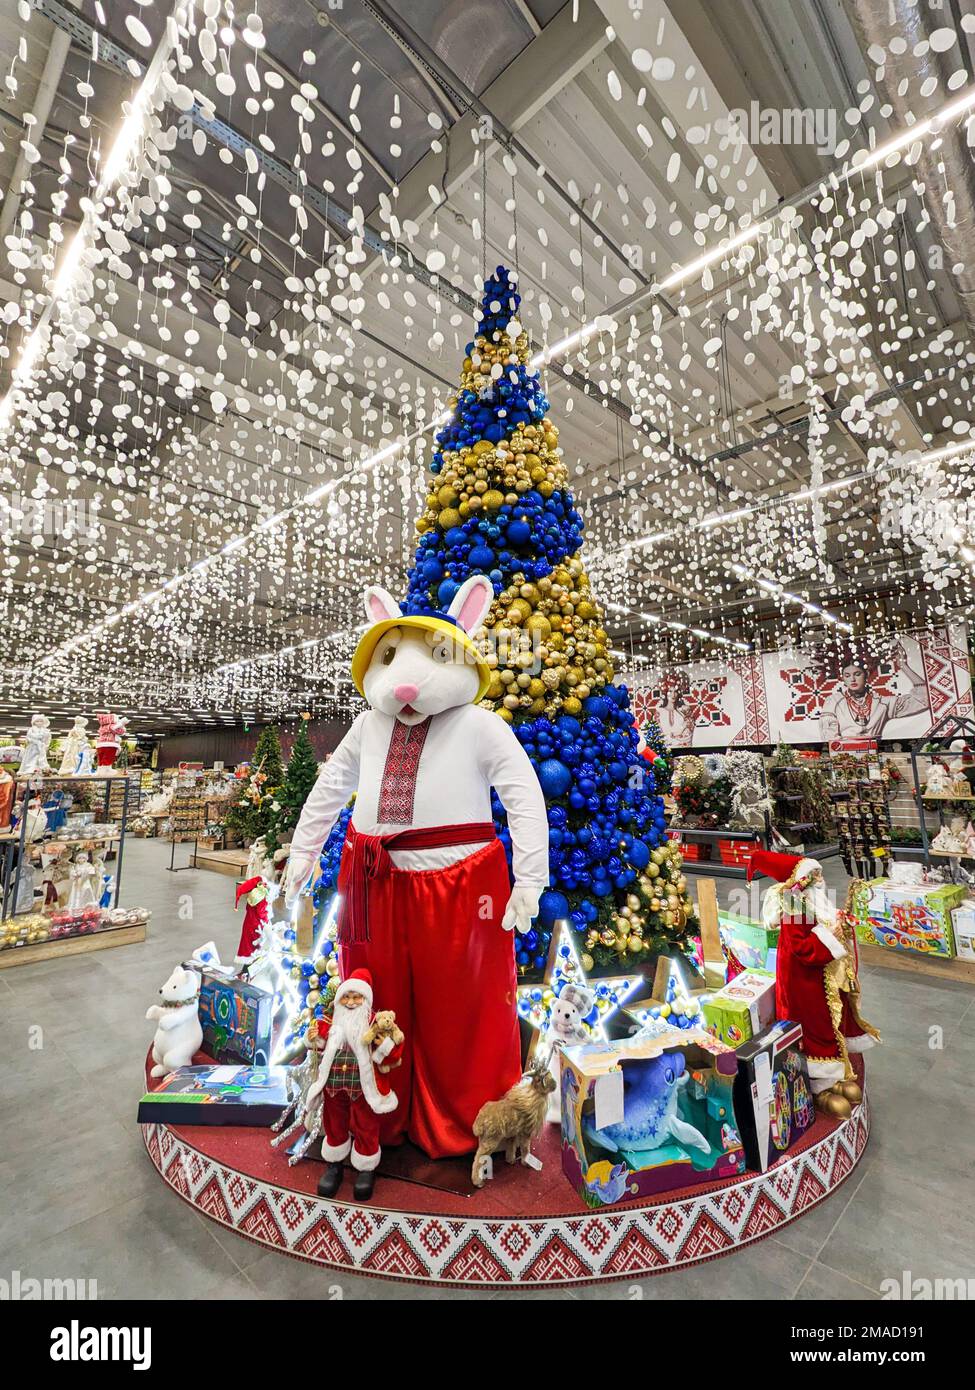 Le symbole de 2023 est un grand lièvre près de l'arbre de Noël dans le supermarché. Dnipro, Ukraine, 6 janvier 2023 Banque D'Images